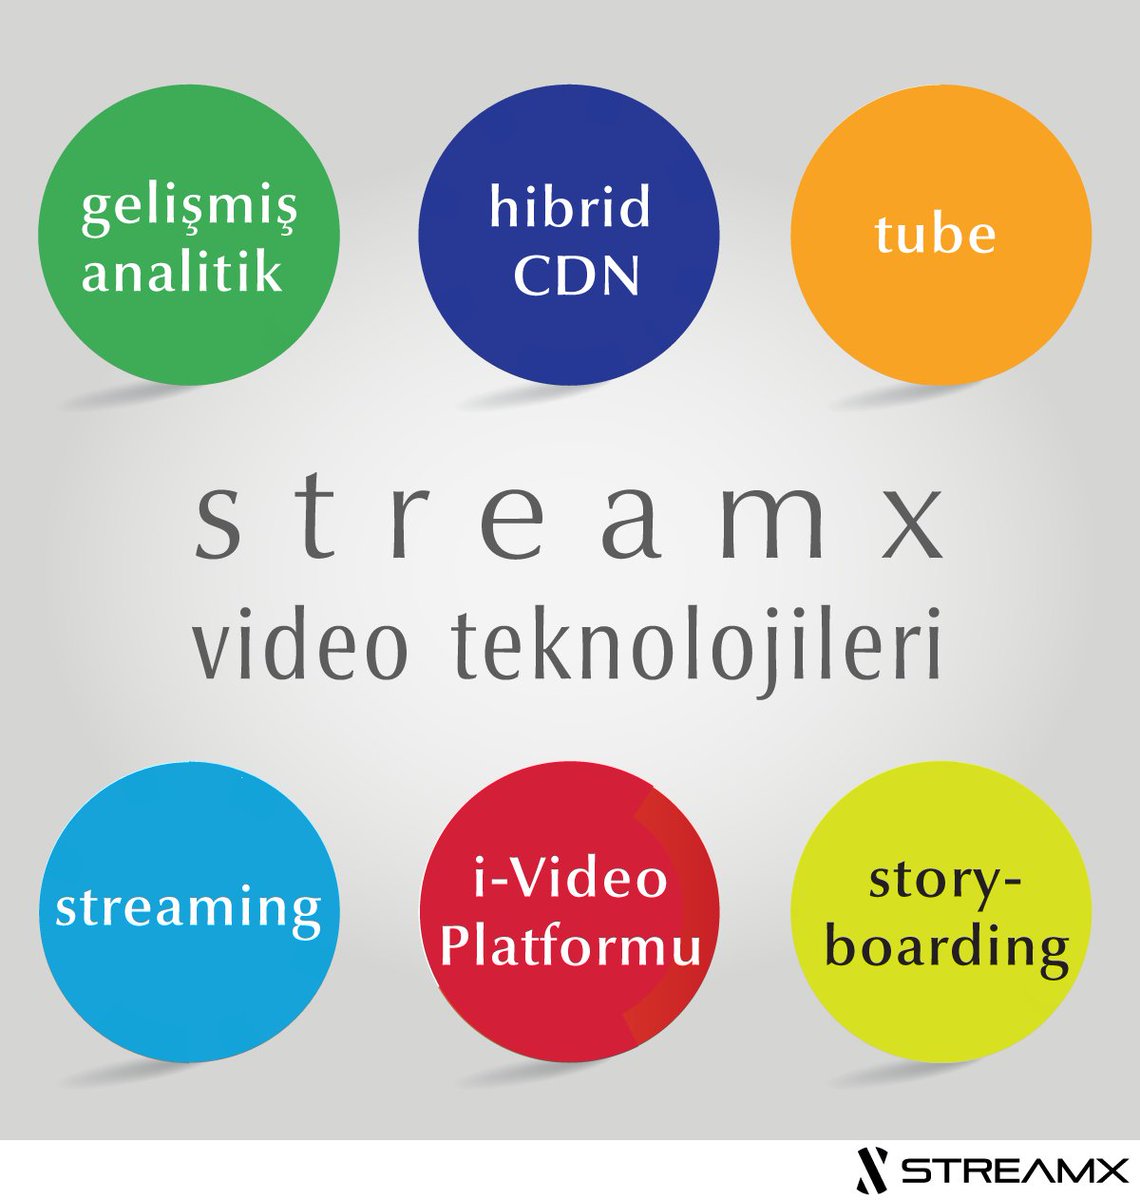 #VideoTeknolojileri ile ilgili tüm ihtiyaçlarınızı #tek noktadan çözmek istemez misiniz?
İşte, Streamx markamız bünyesindeki 6 modülü ile bunu gerçekleştiriyor.

#VideoÇözümleri #VideoStreaming #VideoAnalitik #EtkileşimliVideo #İnteraktifVideo #VideoStoryboarding #HybridCDN #Tube